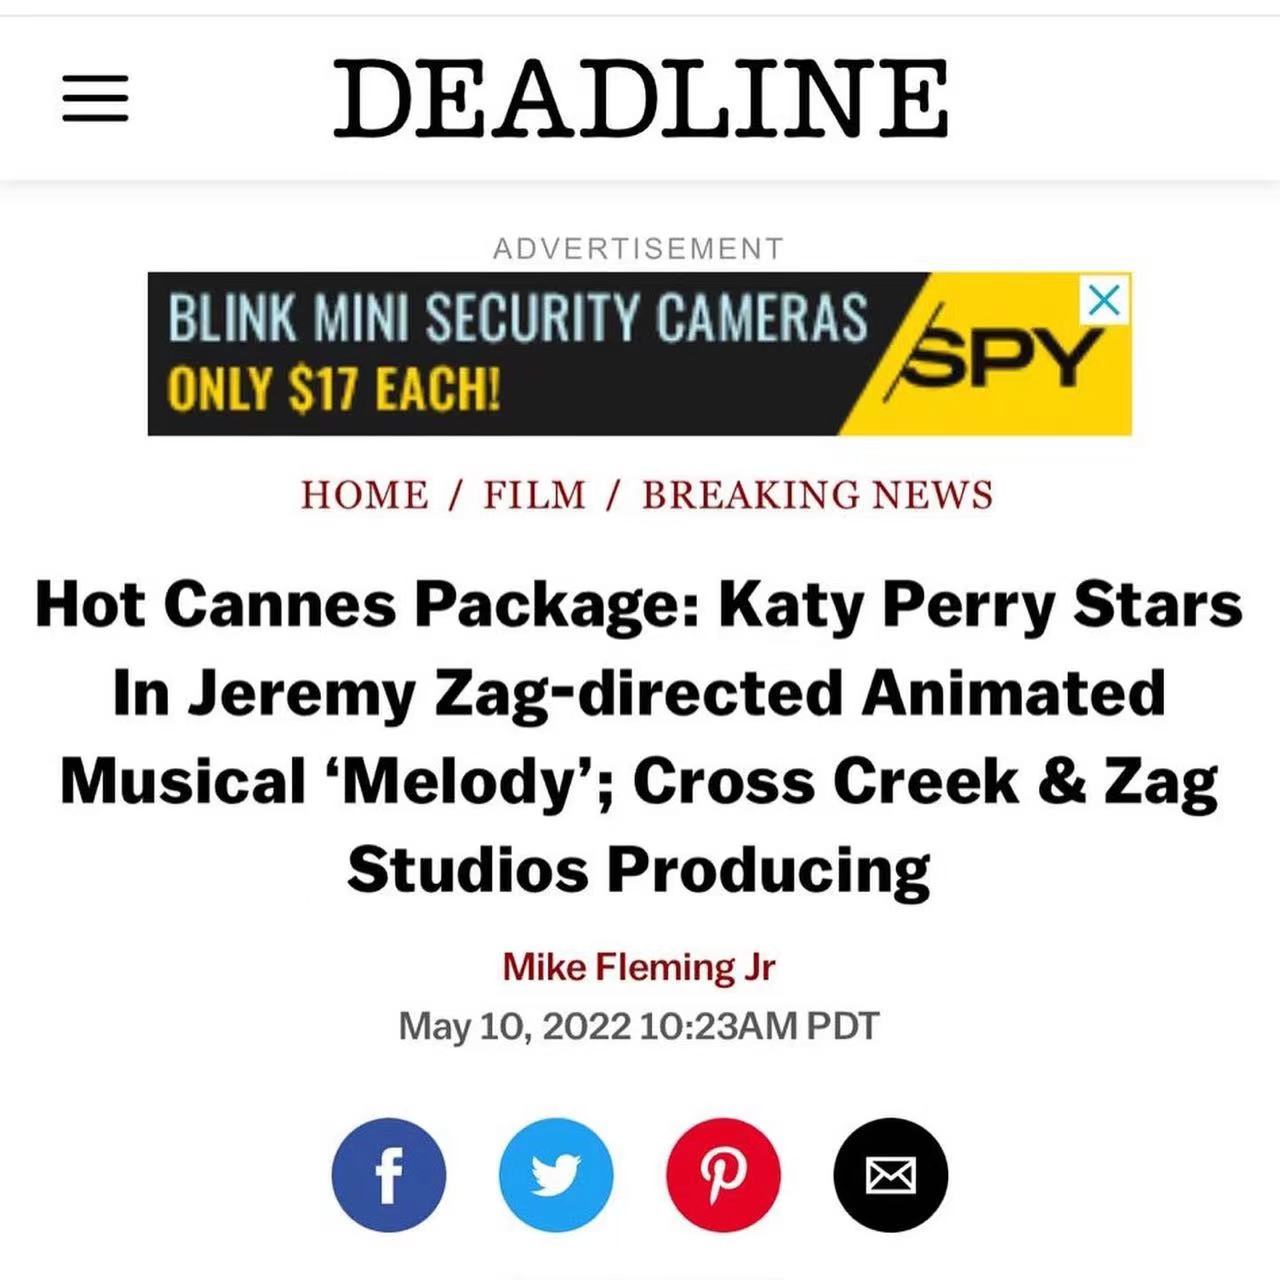 凯蒂·佩里将主演动画歌舞片《麦乐蒂》 并为该片创作演唱歌曲